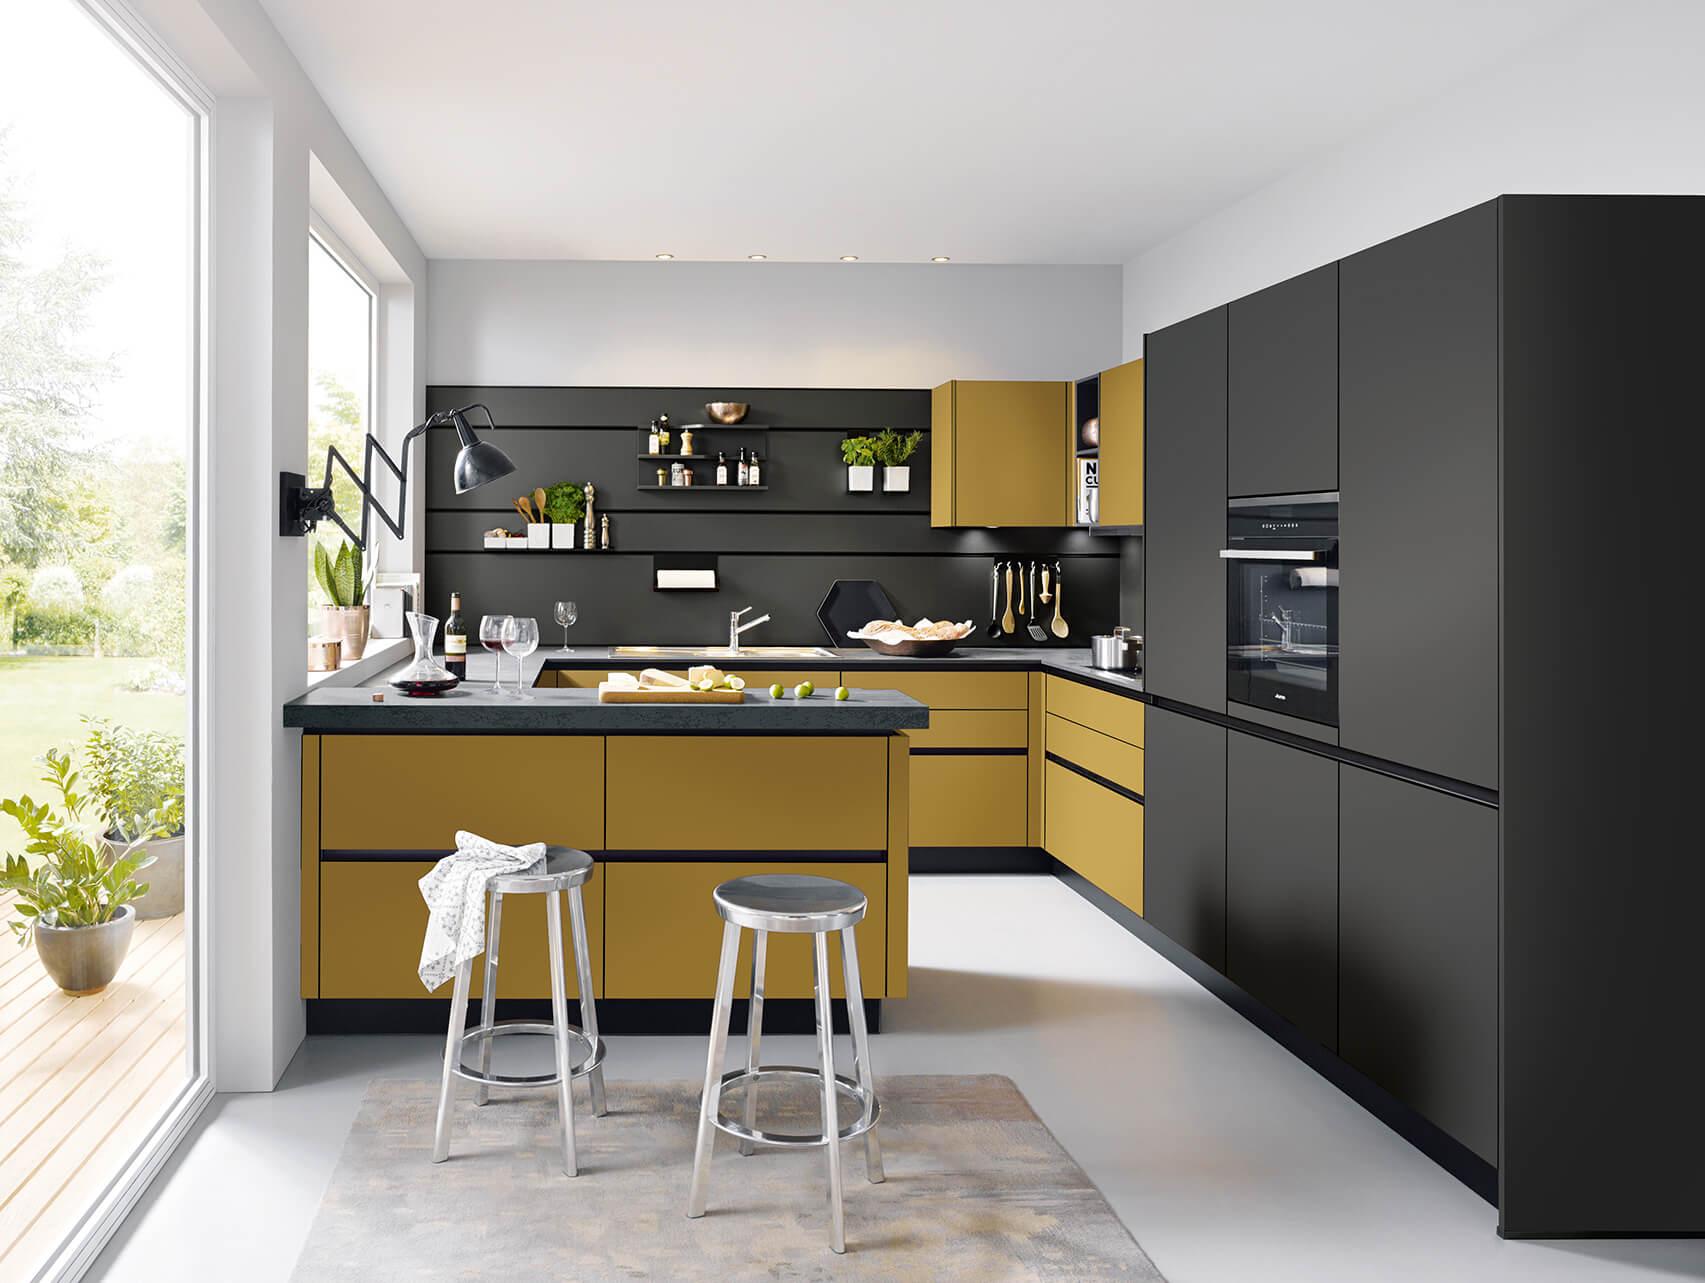 Milieufoto Küche mit ocker und schwarz